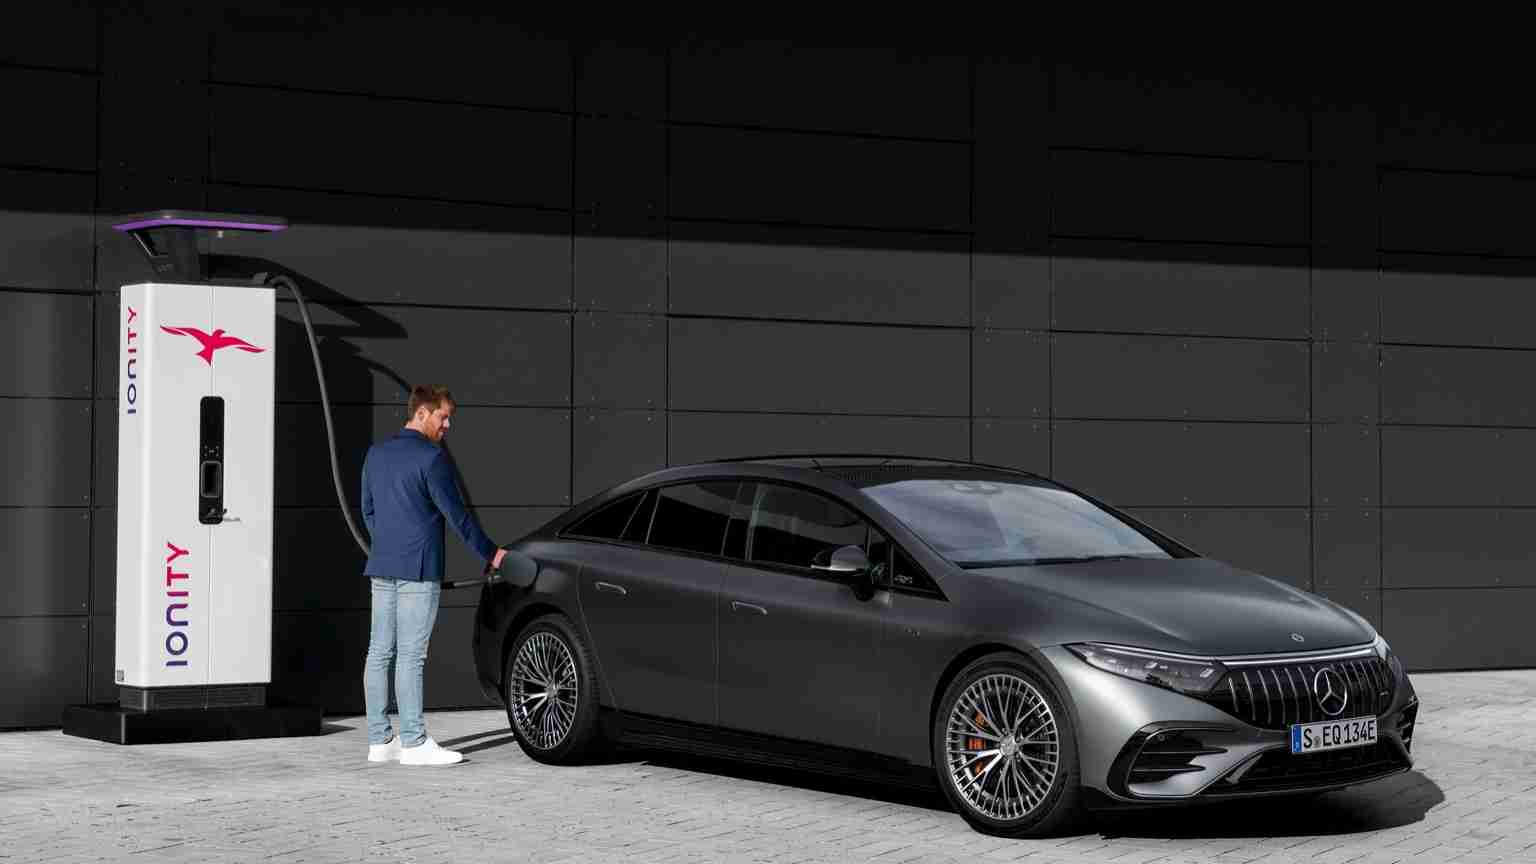 Mercedes EQS AMG 53 4MATICplus Release Date